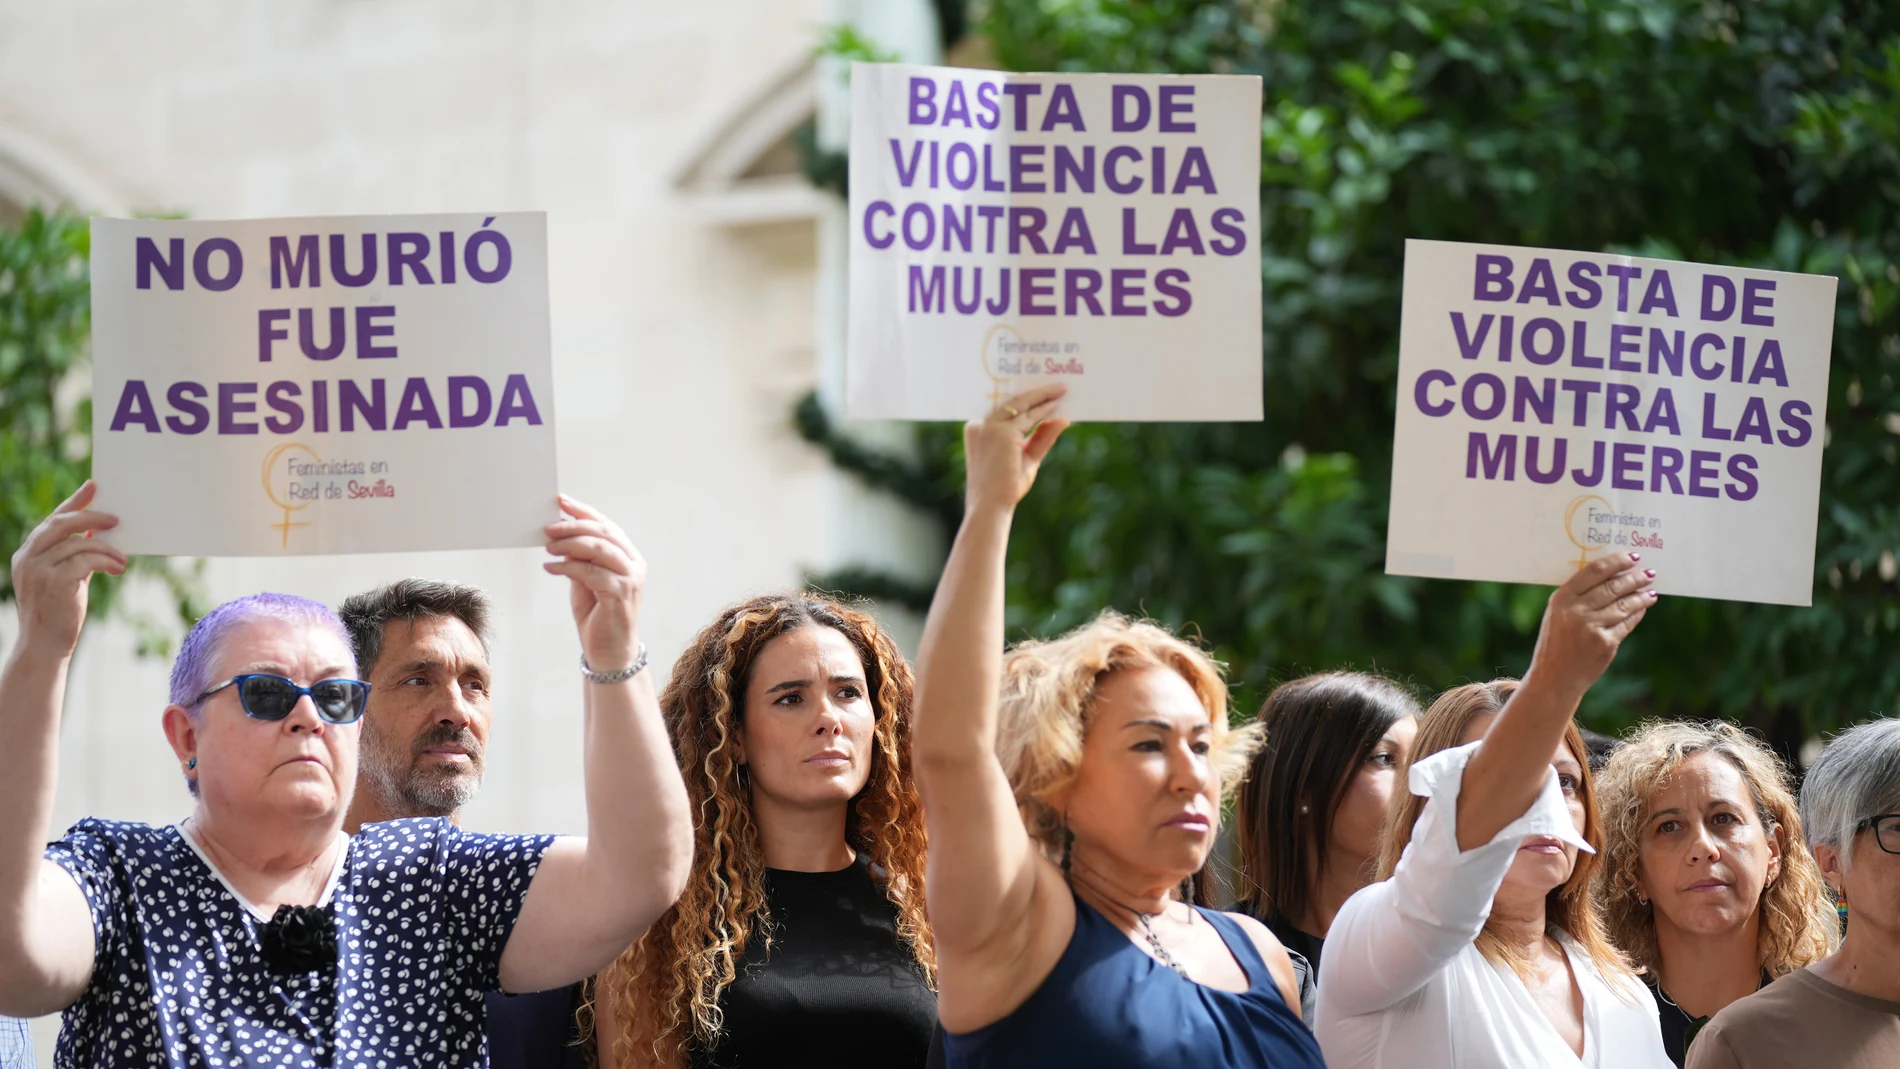 Minutos de silencio por las dos últimas víctimas mortales por violencia de género en Sevilla y en el municipio jiennense de Villanueva de Arzobispo (Jaén).